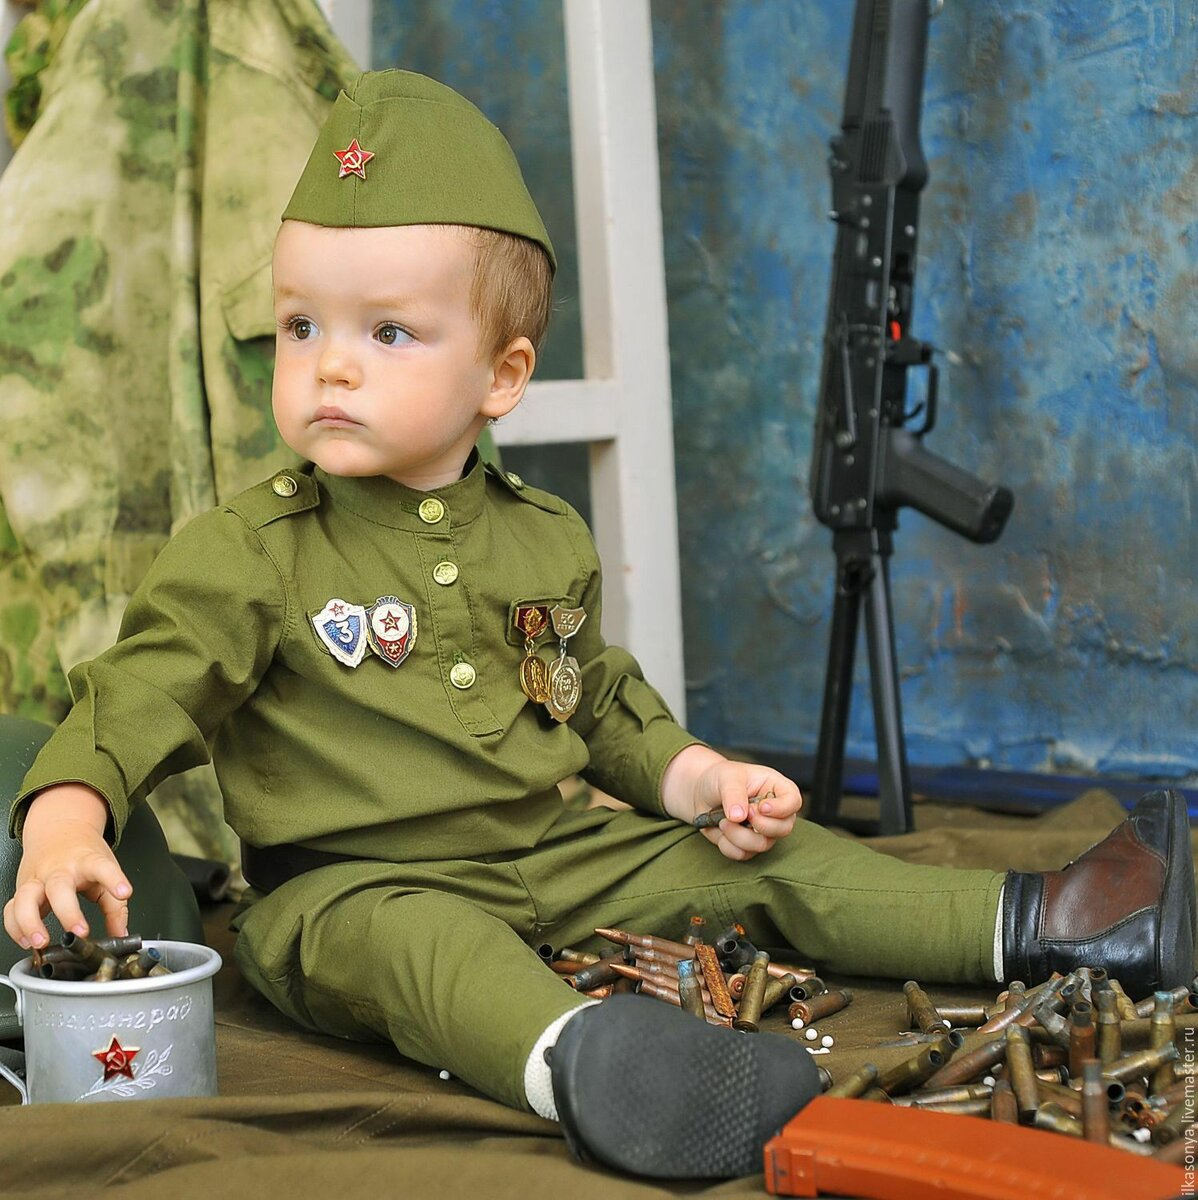 Сайт военной детской. Дети в военной форме. Малыш в военной форме. Детская Военная форма. Солдатская форма для детей.